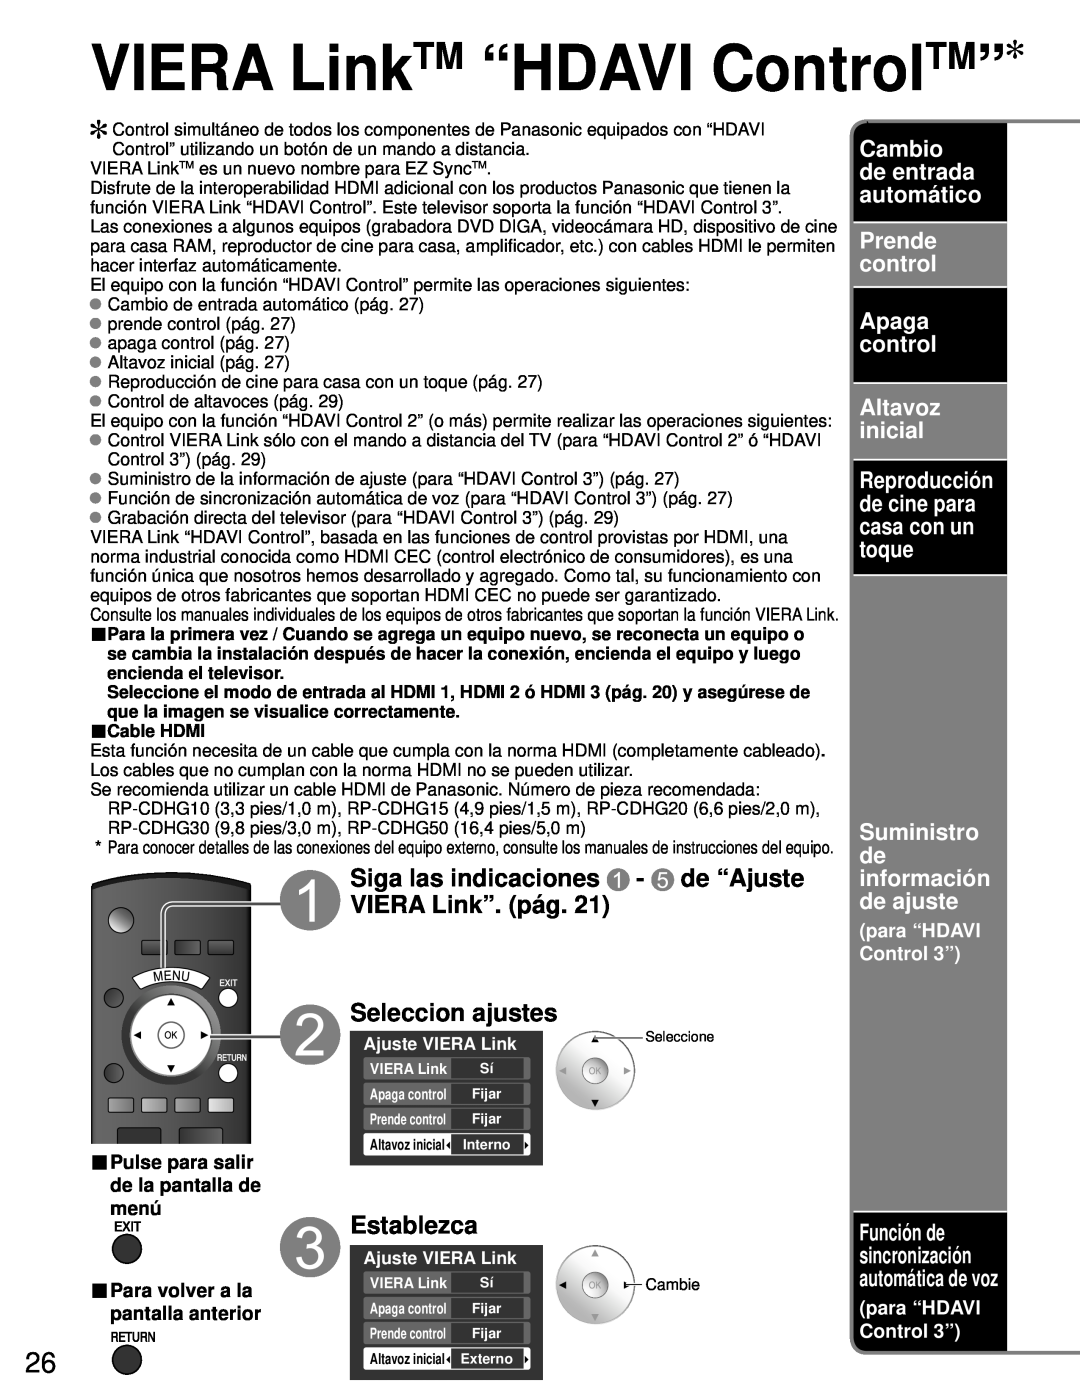 Panasonic TH-50PZ80U VIERA LinkTM “HDAVI ControlTM”, Siga las indicaciones - de “Ajuste VIERA Link”. pág, Establezca 